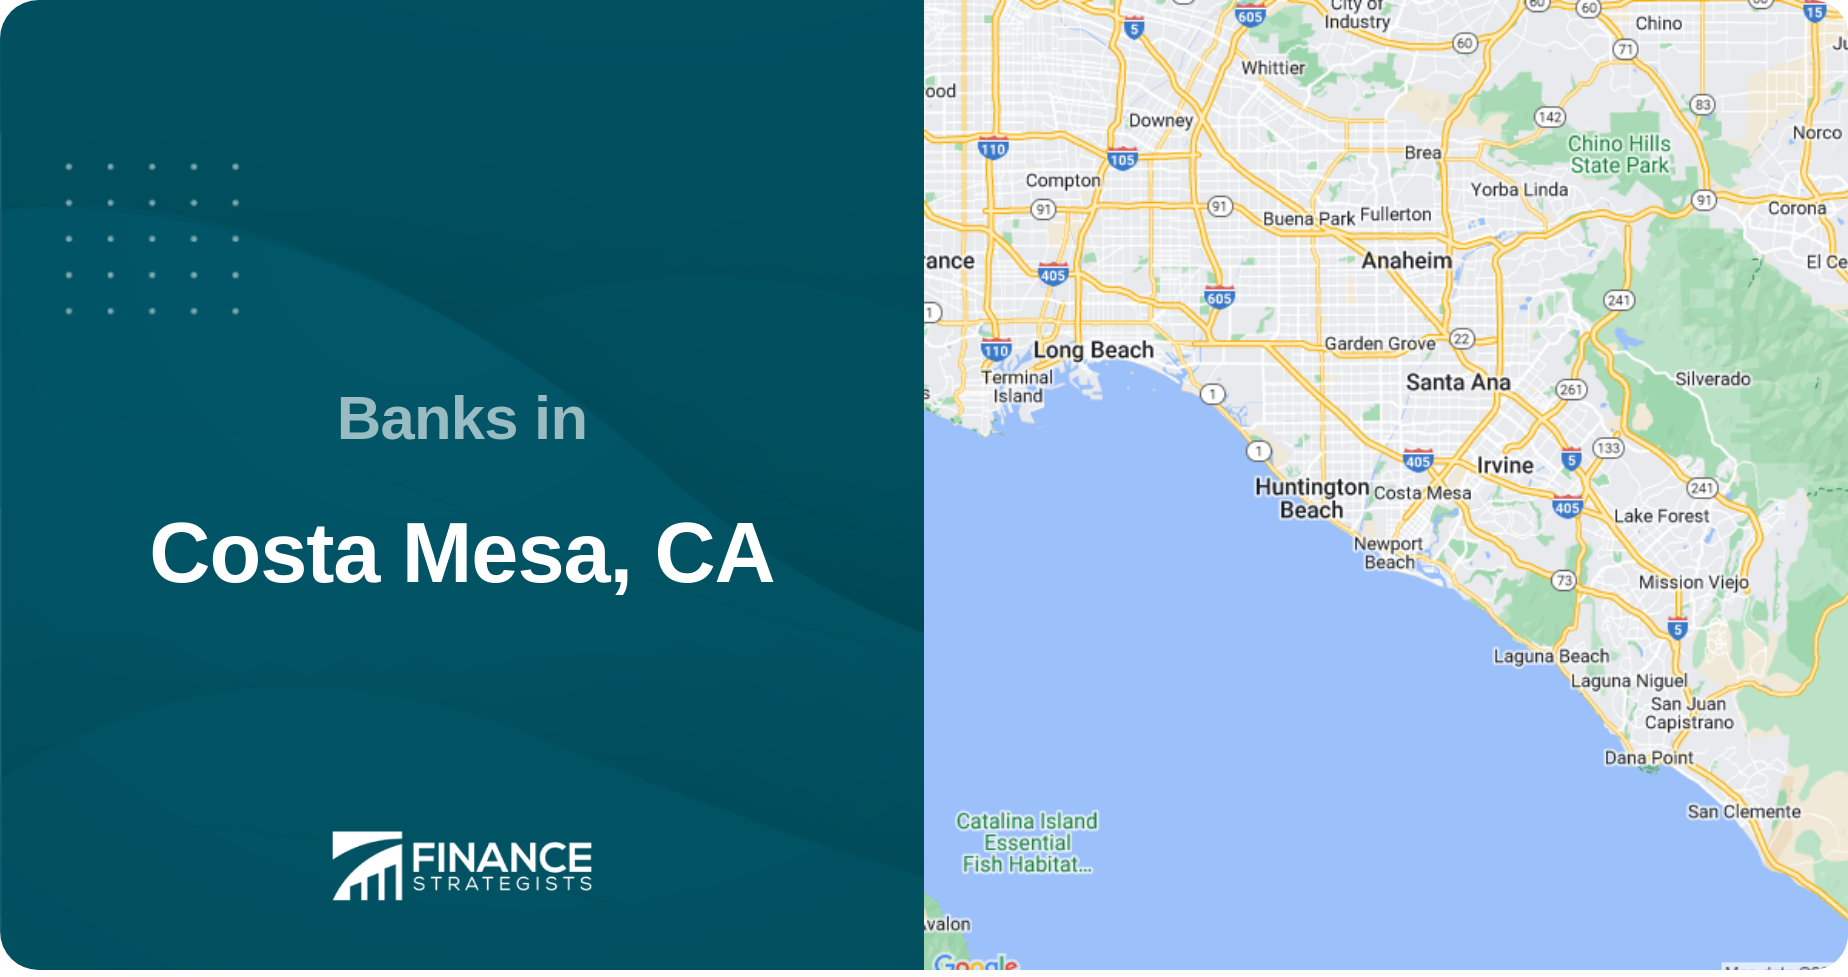 Banks in Costa Mesa, CA